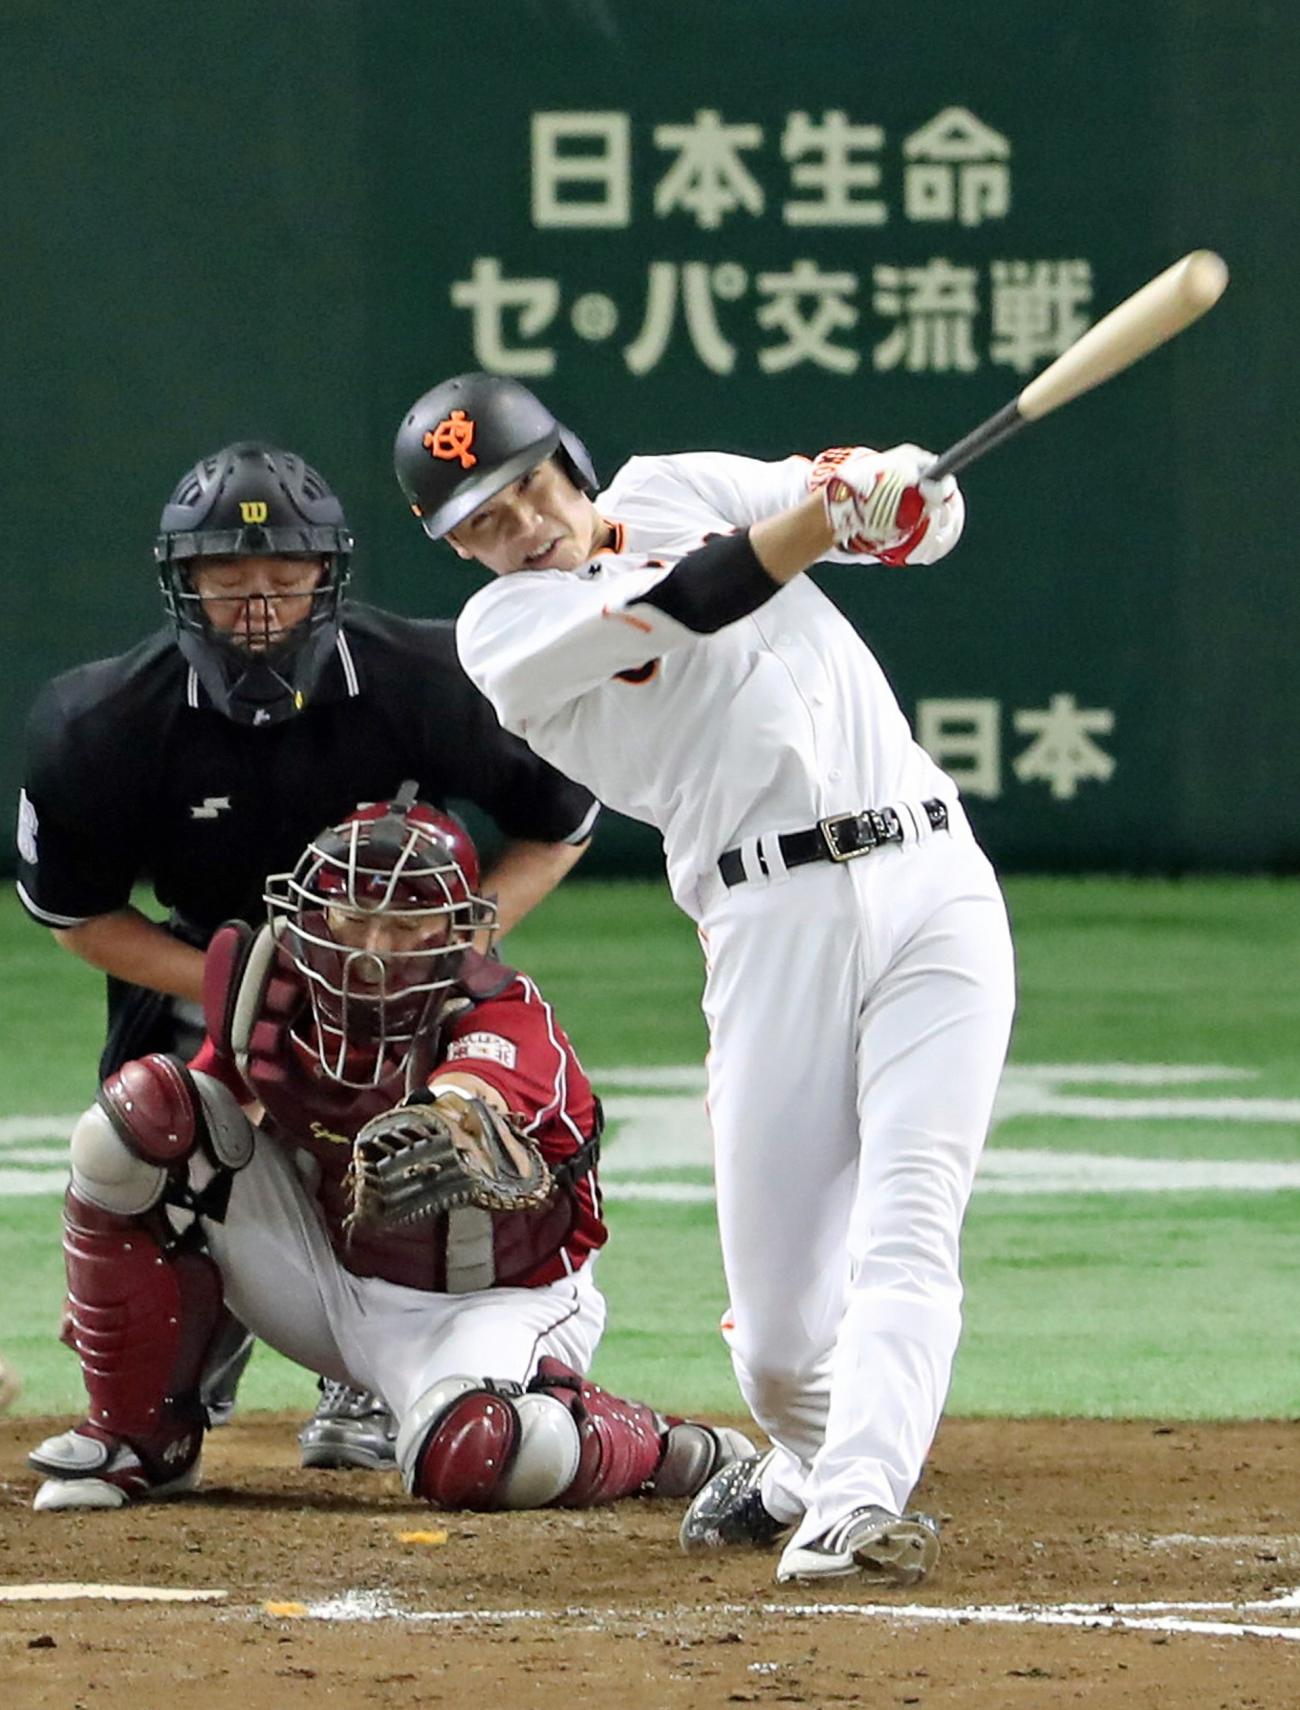 さすが巨人坂本先生 内角打ち質問オコエに手本ｖ弾 野球 日刊スポーツ